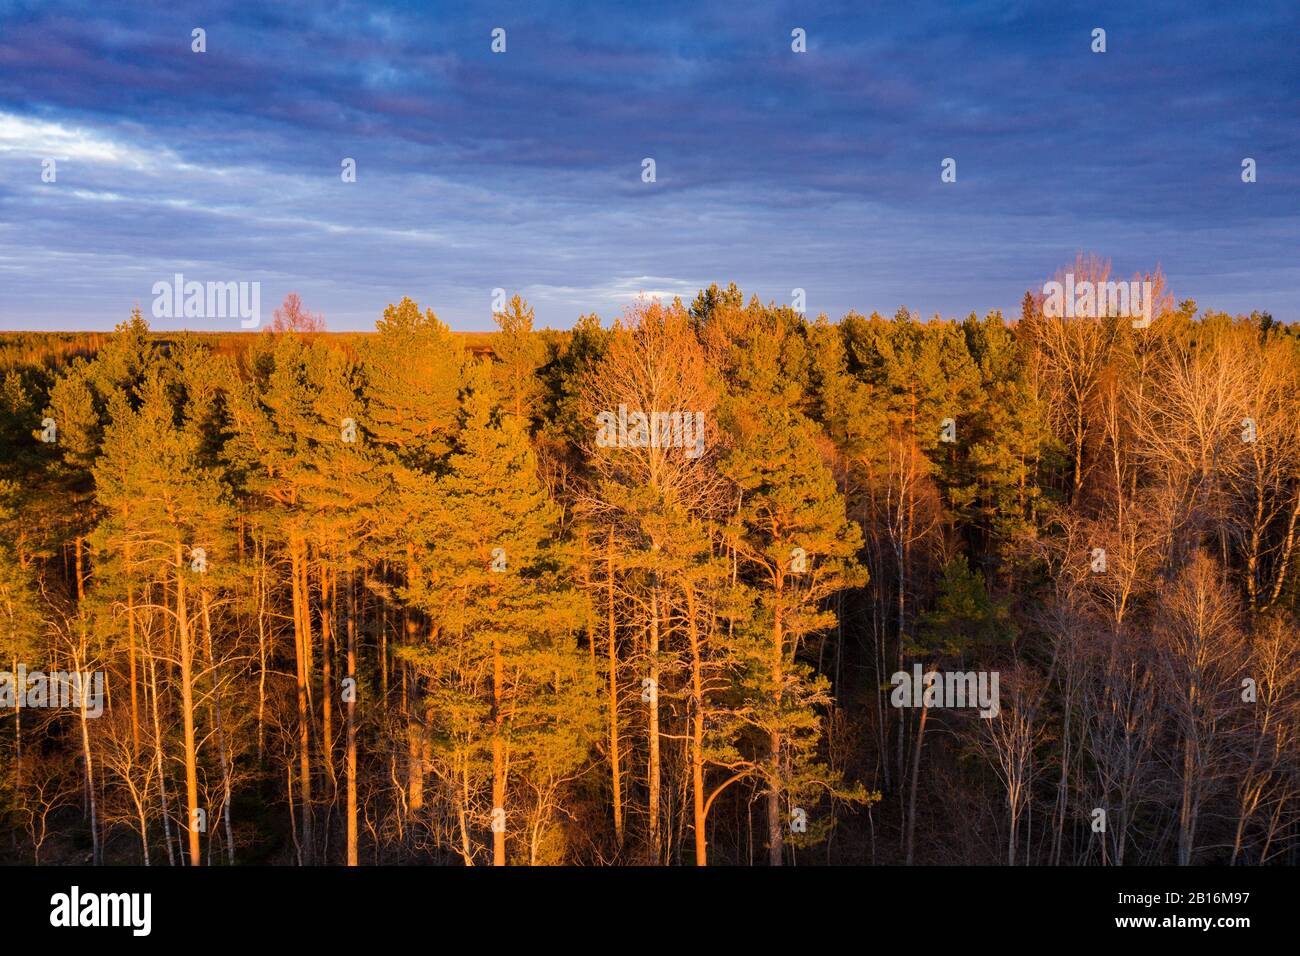 Foresta in colori primaverili. Alberi decidui colorati in luce solare dorata. Rabivere, Estonia, Europa Foto Stock